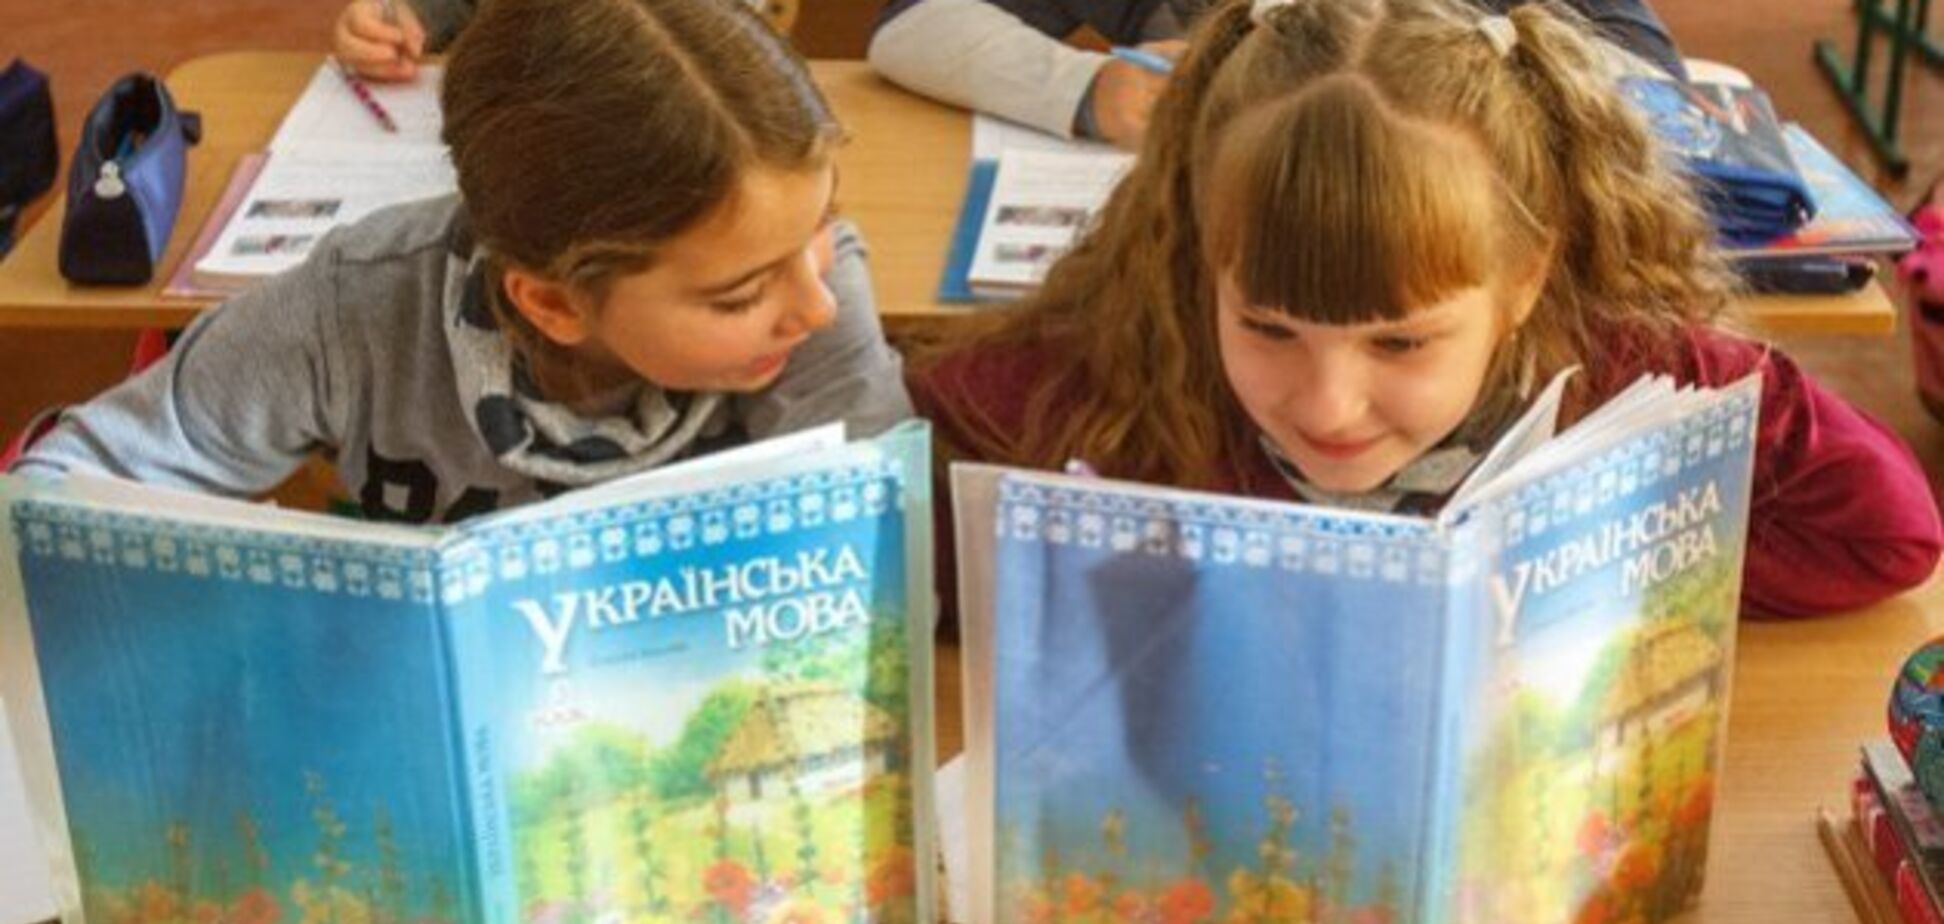 Науковці порахували кількість слів в українській мові